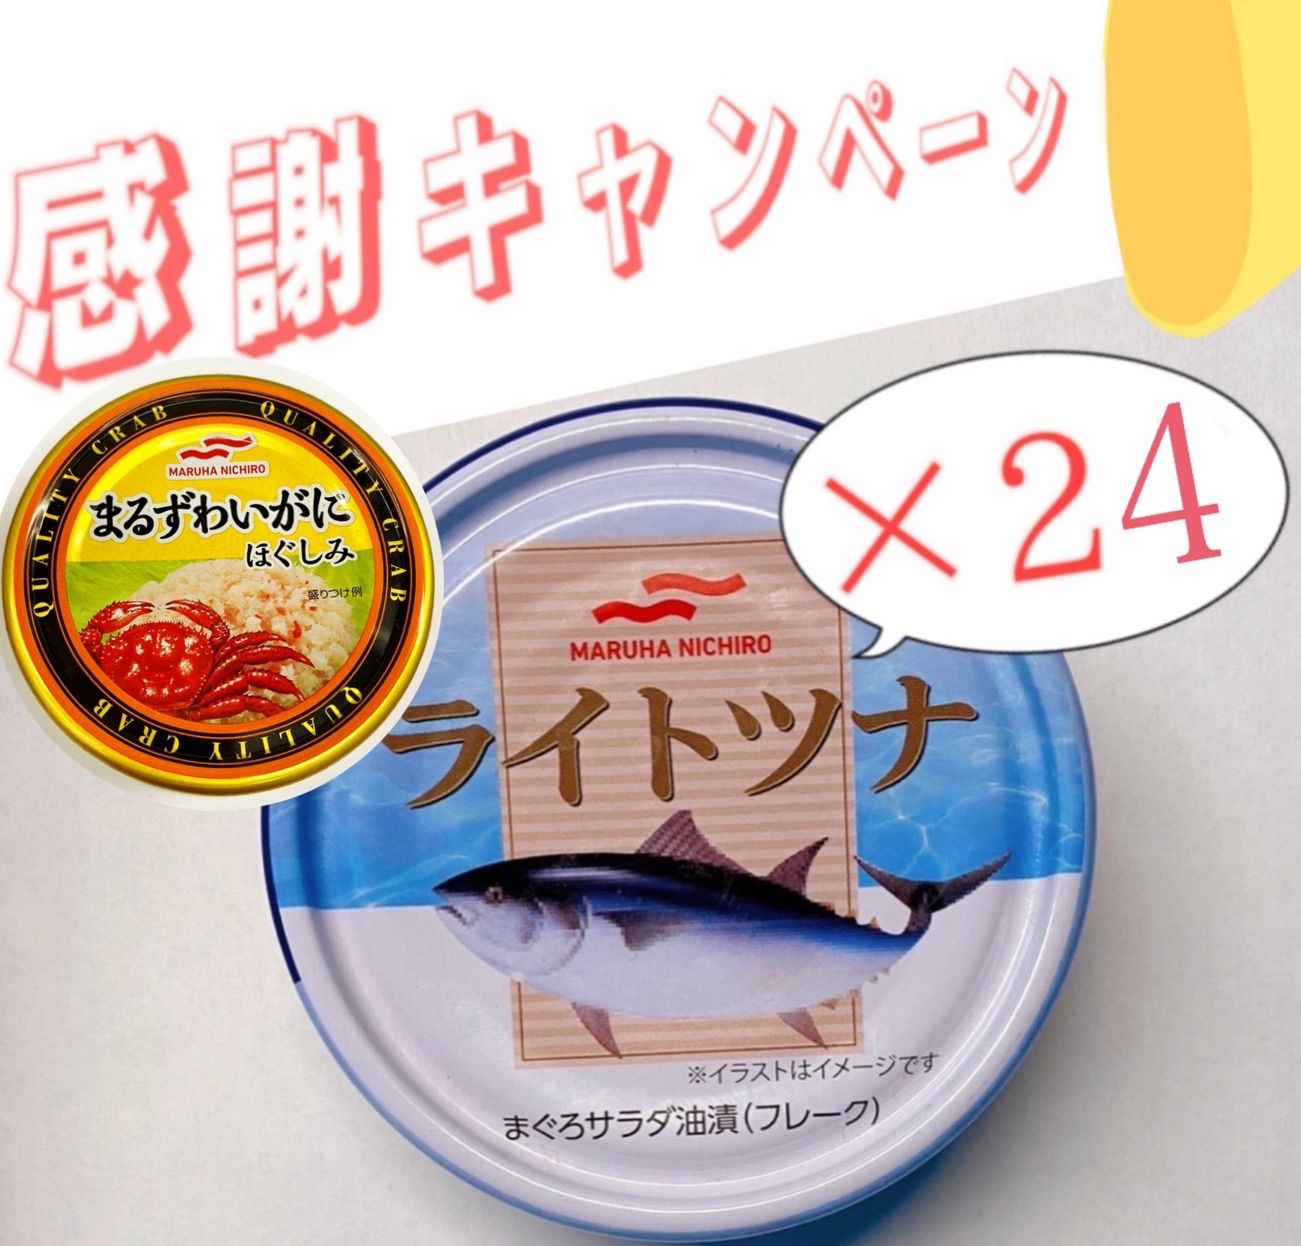 【プレゼント企画】ツナ缶ご購入でかに缶プレゼント❕-0